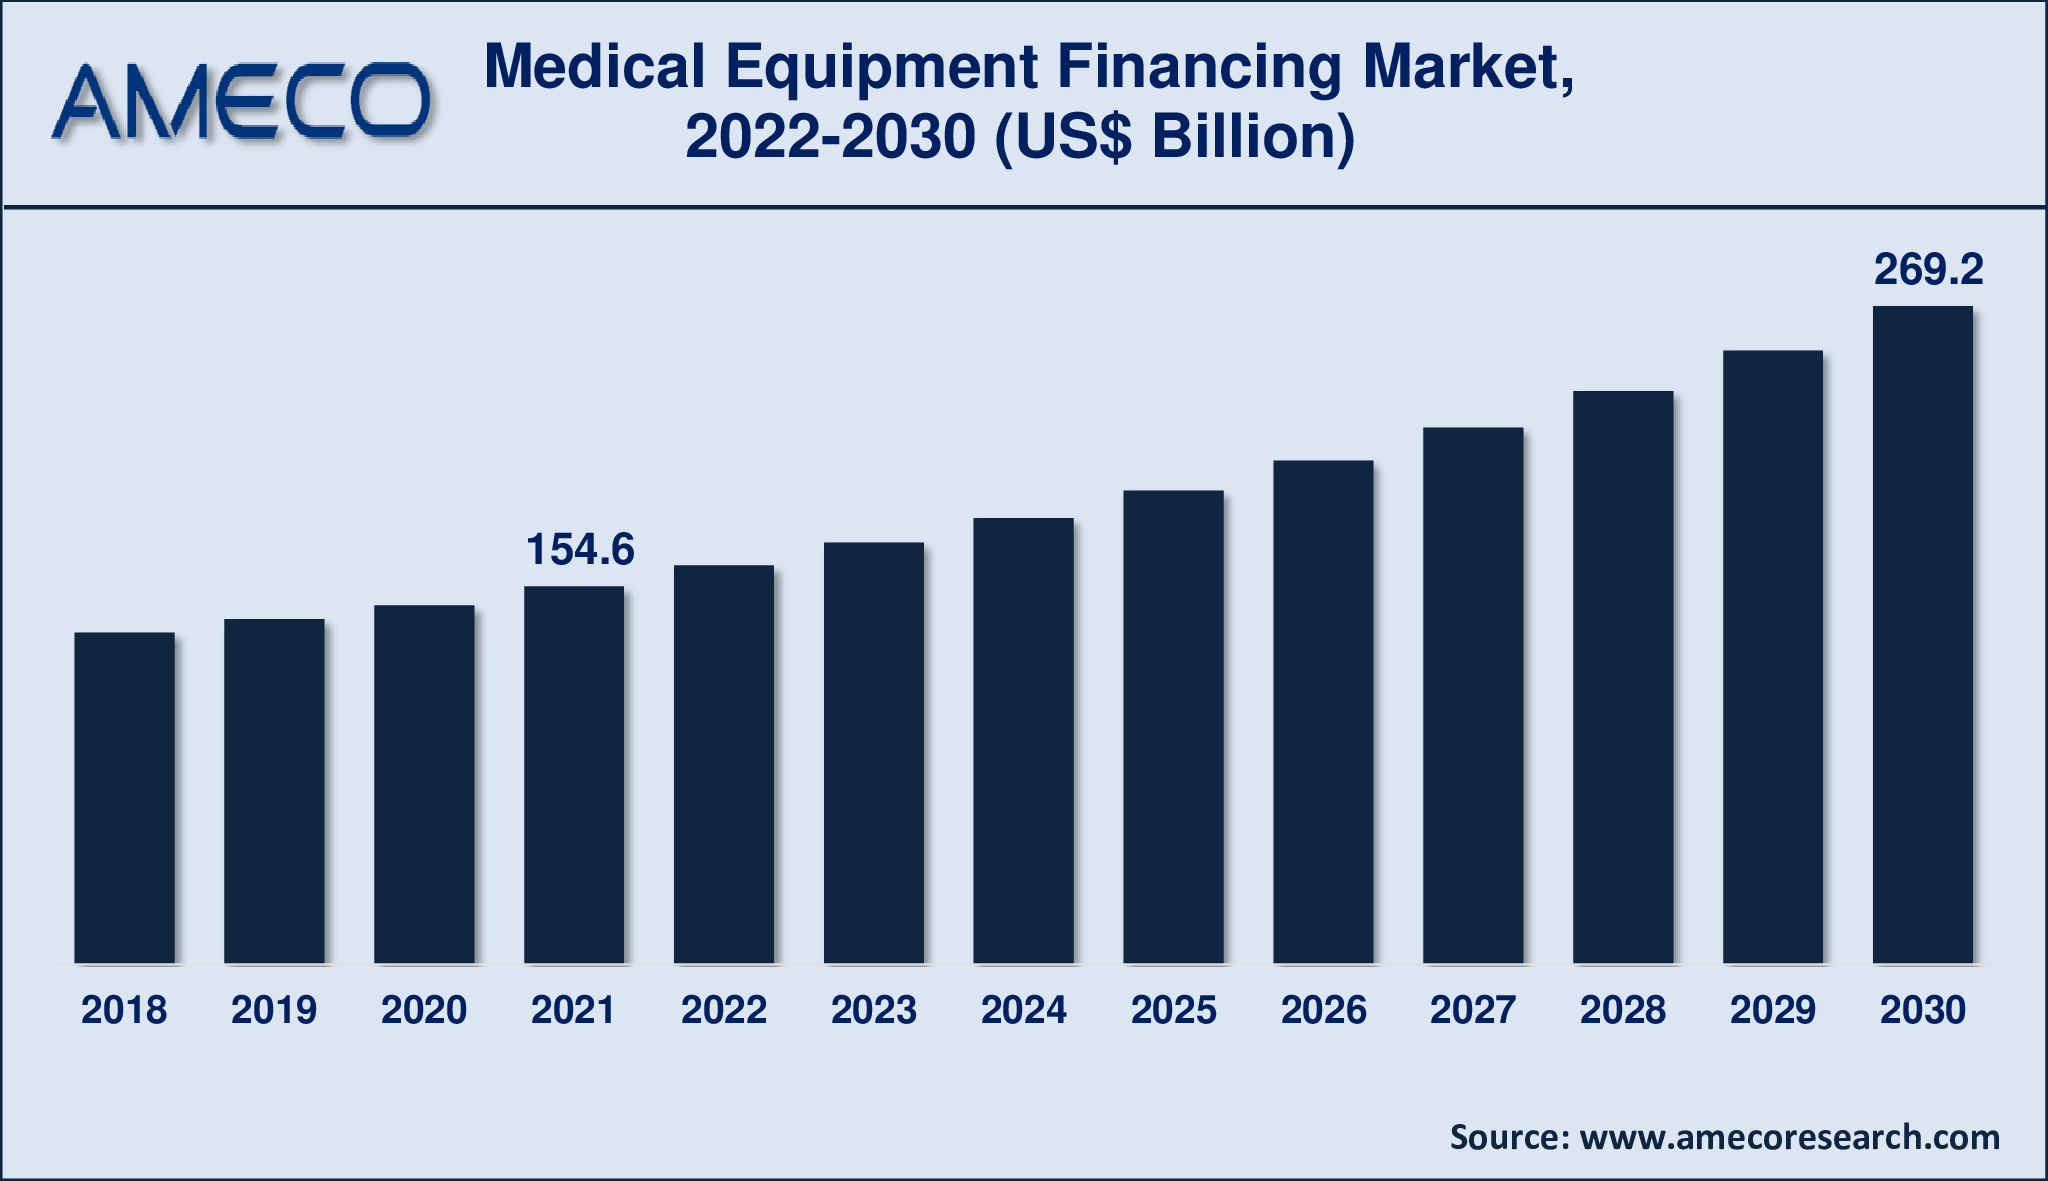 Medical Equipment Financing Market CAGR